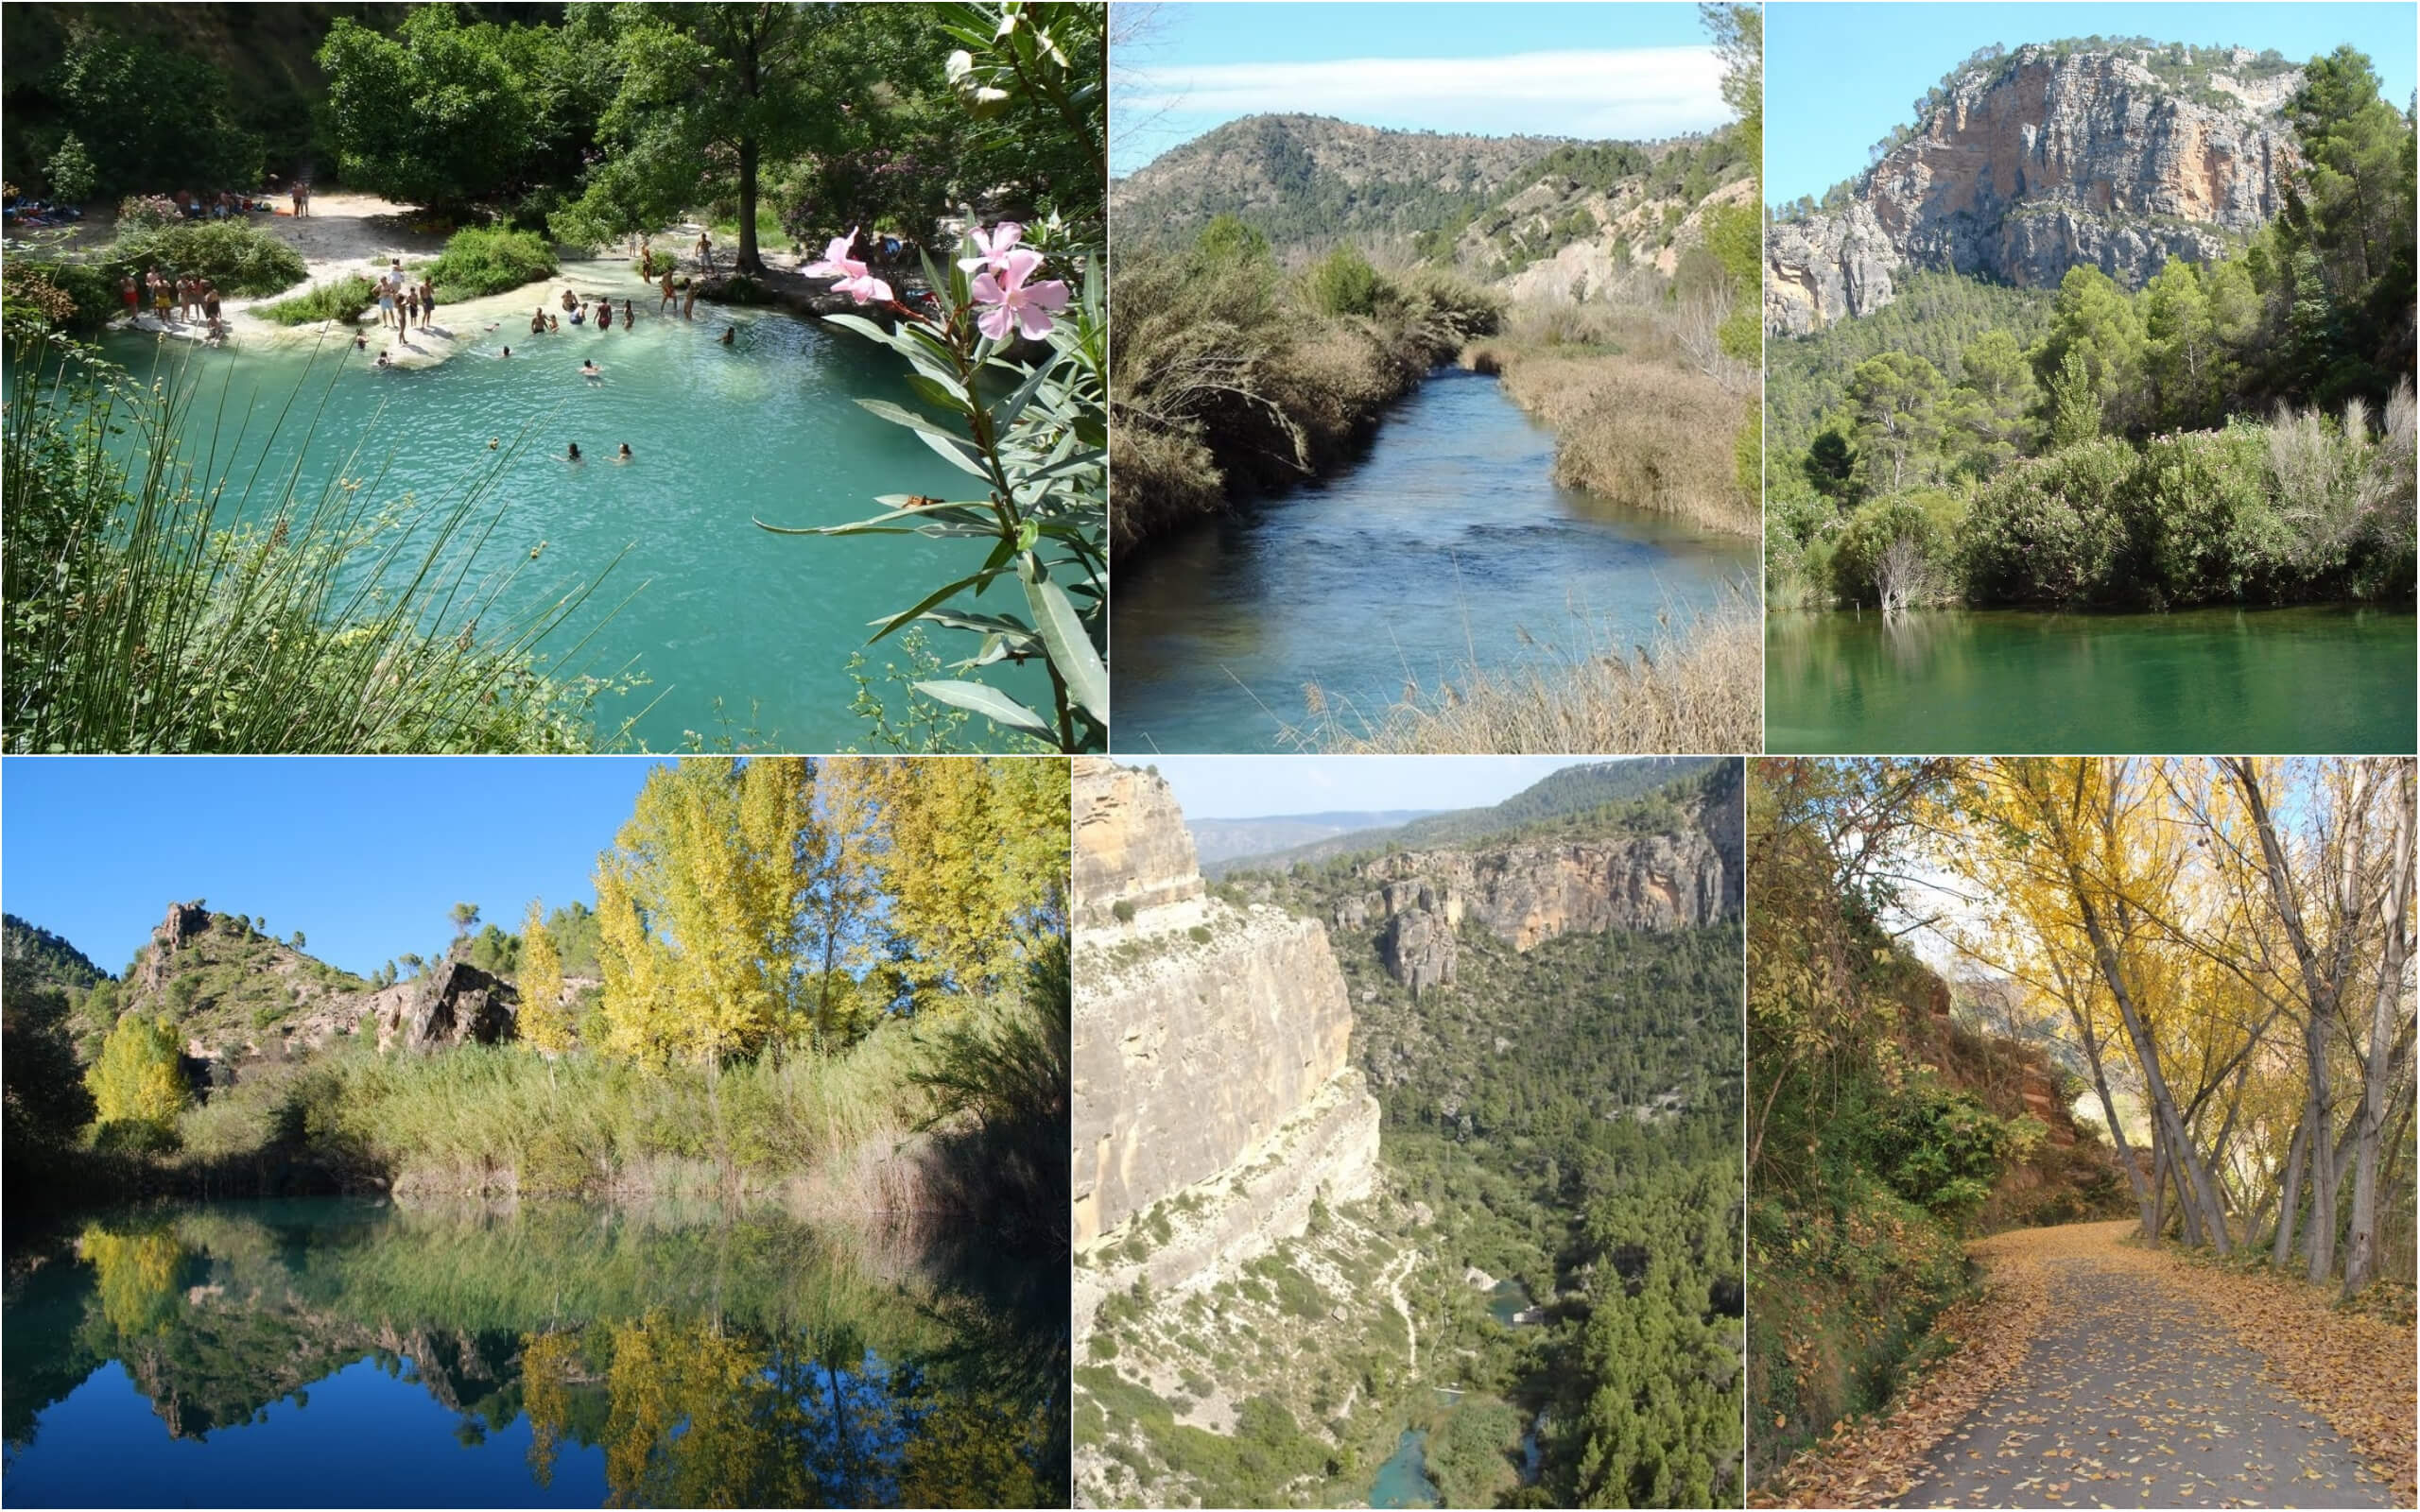 Prirodniy-park-v-gorode-Valensiya-Ispaniya